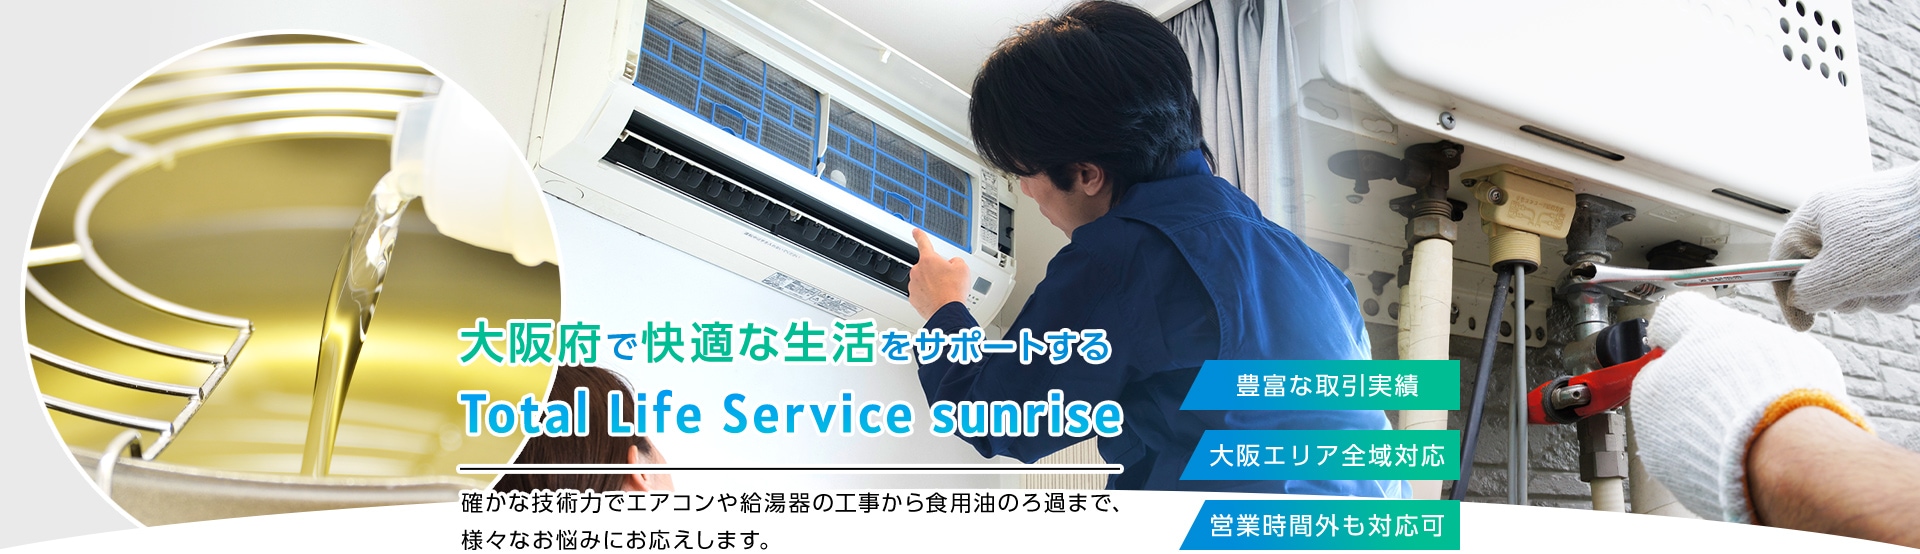 大阪府で快適な生活をサポートする Total Life Service sunrise